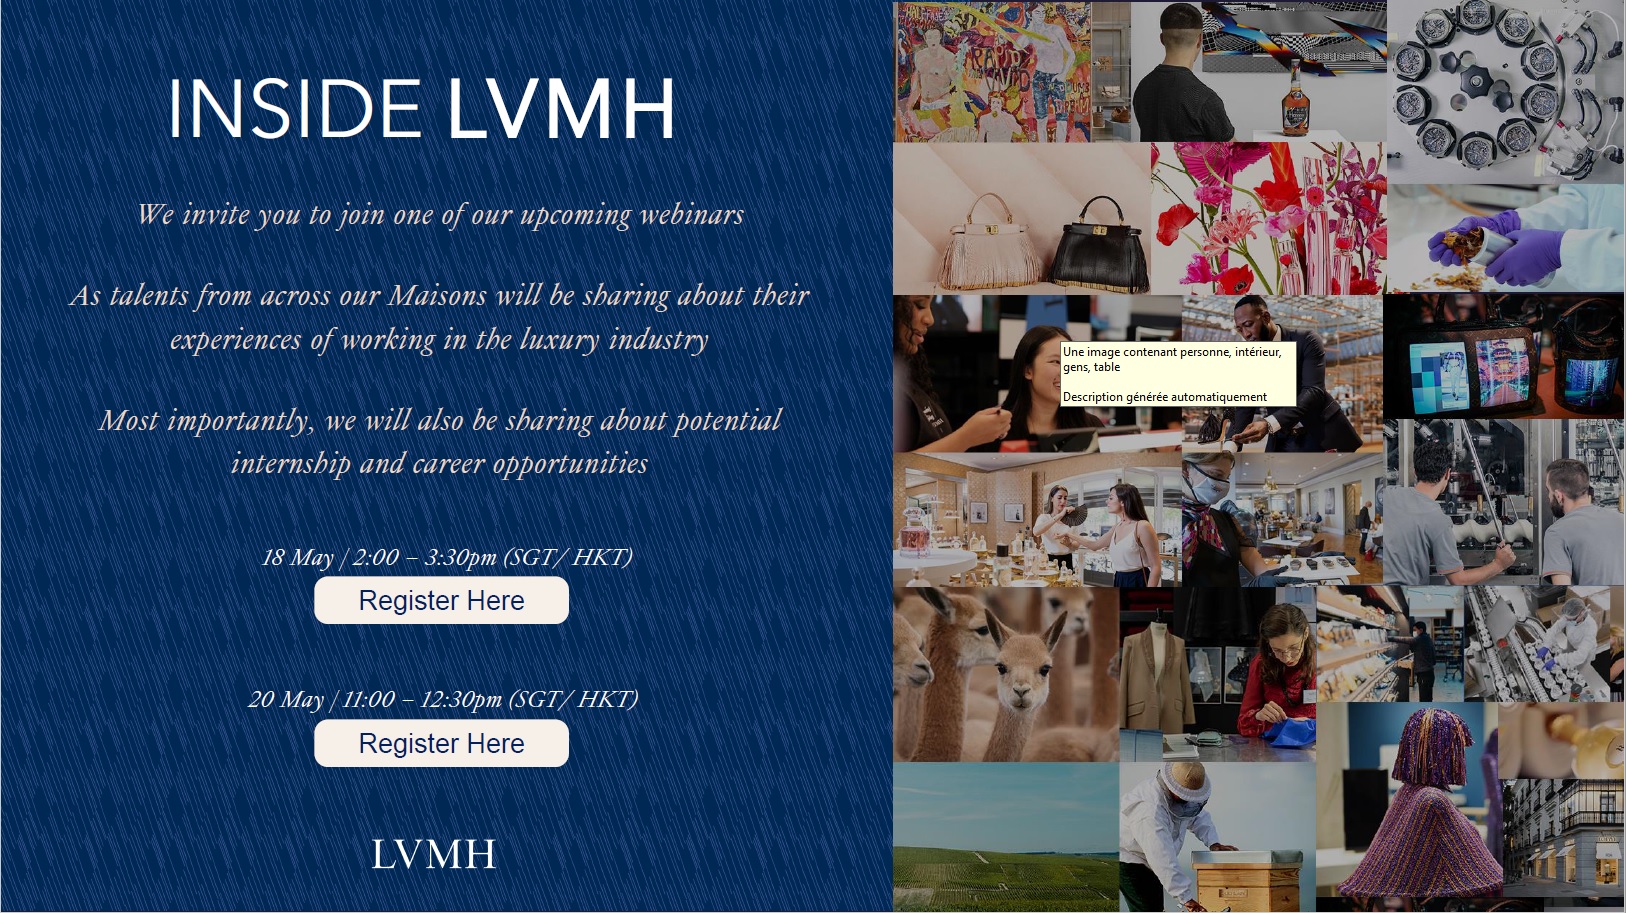 INSIDE LVMH - LVMH webinars